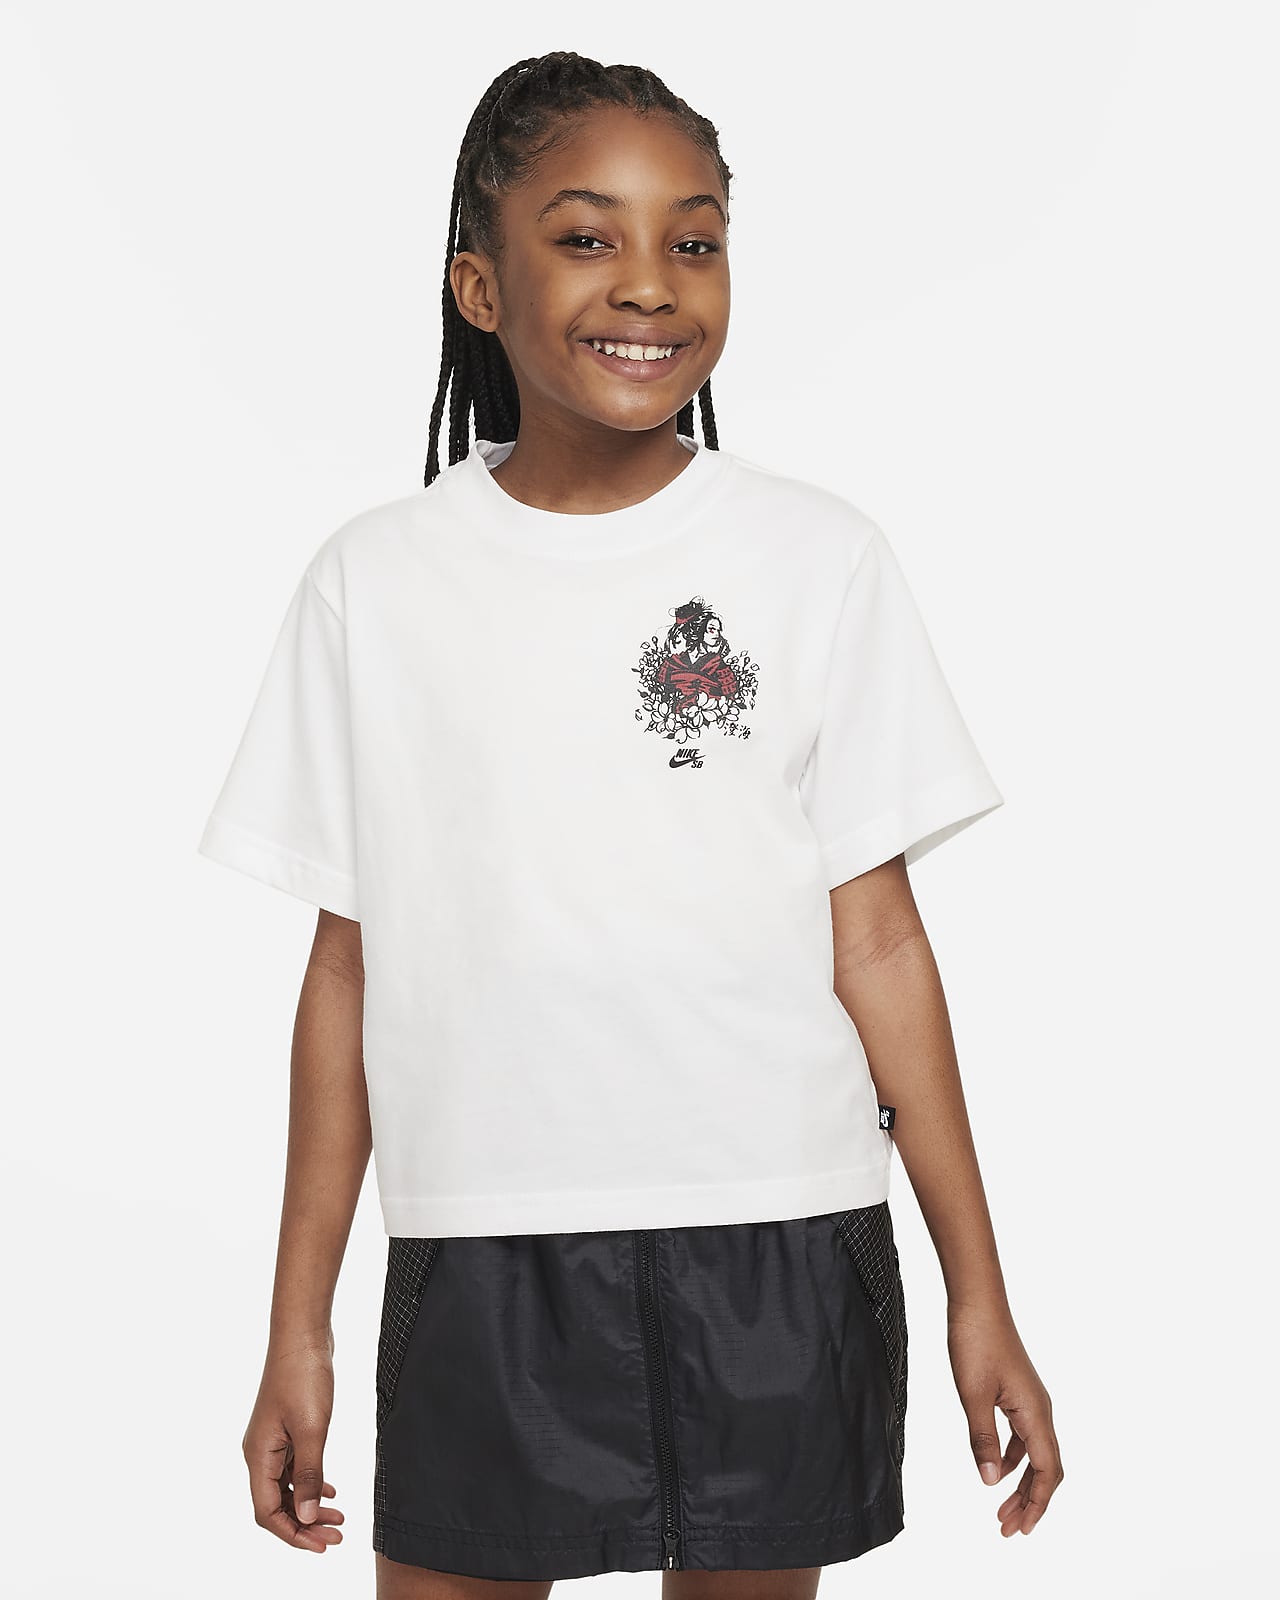 Sky Brown x Nike SB Genç Çocuk (Kız) Kaykay Tişörtü